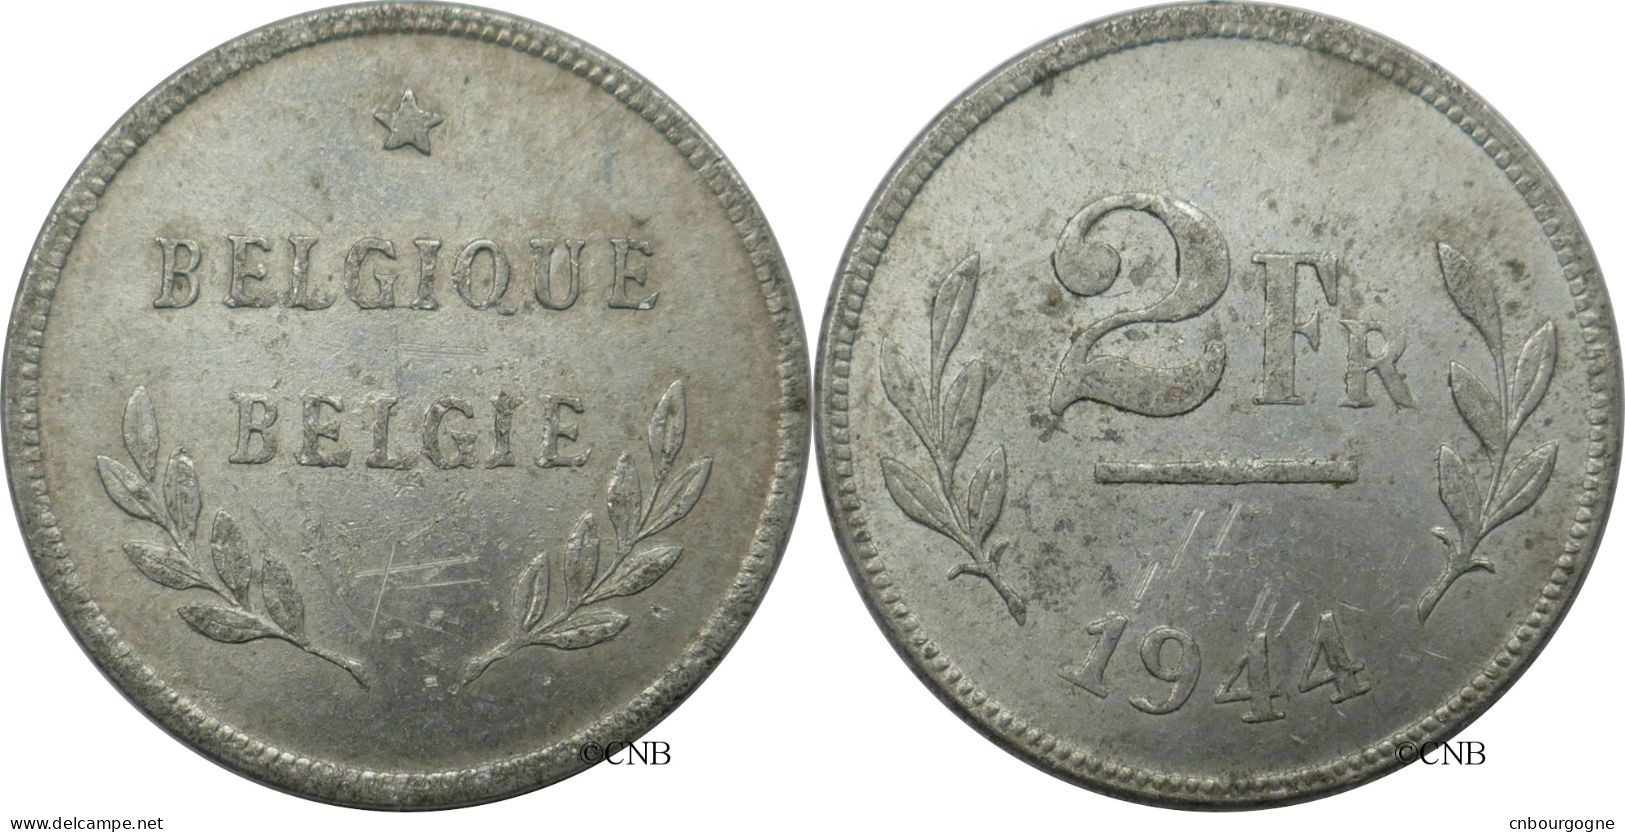 Belgique - Libération - 2 Francs 1944 - TTB+/AU50 ! - Mon6495 - 2 Francs (1944 Liberation)